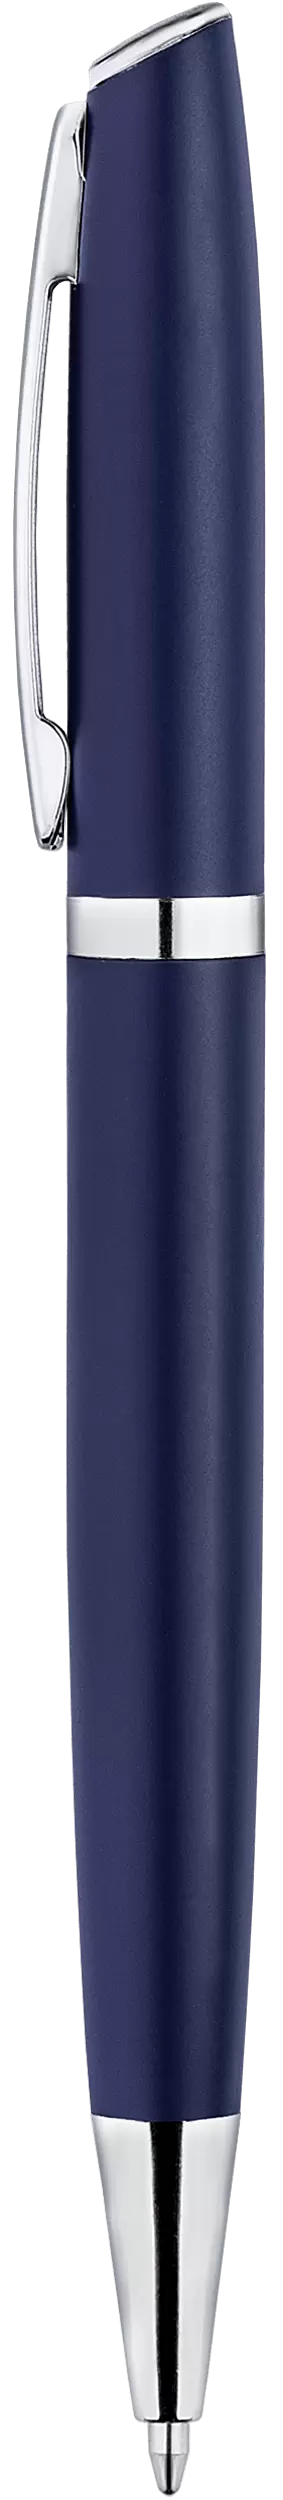 Ручка VESTA Темно-синяя 1120-14